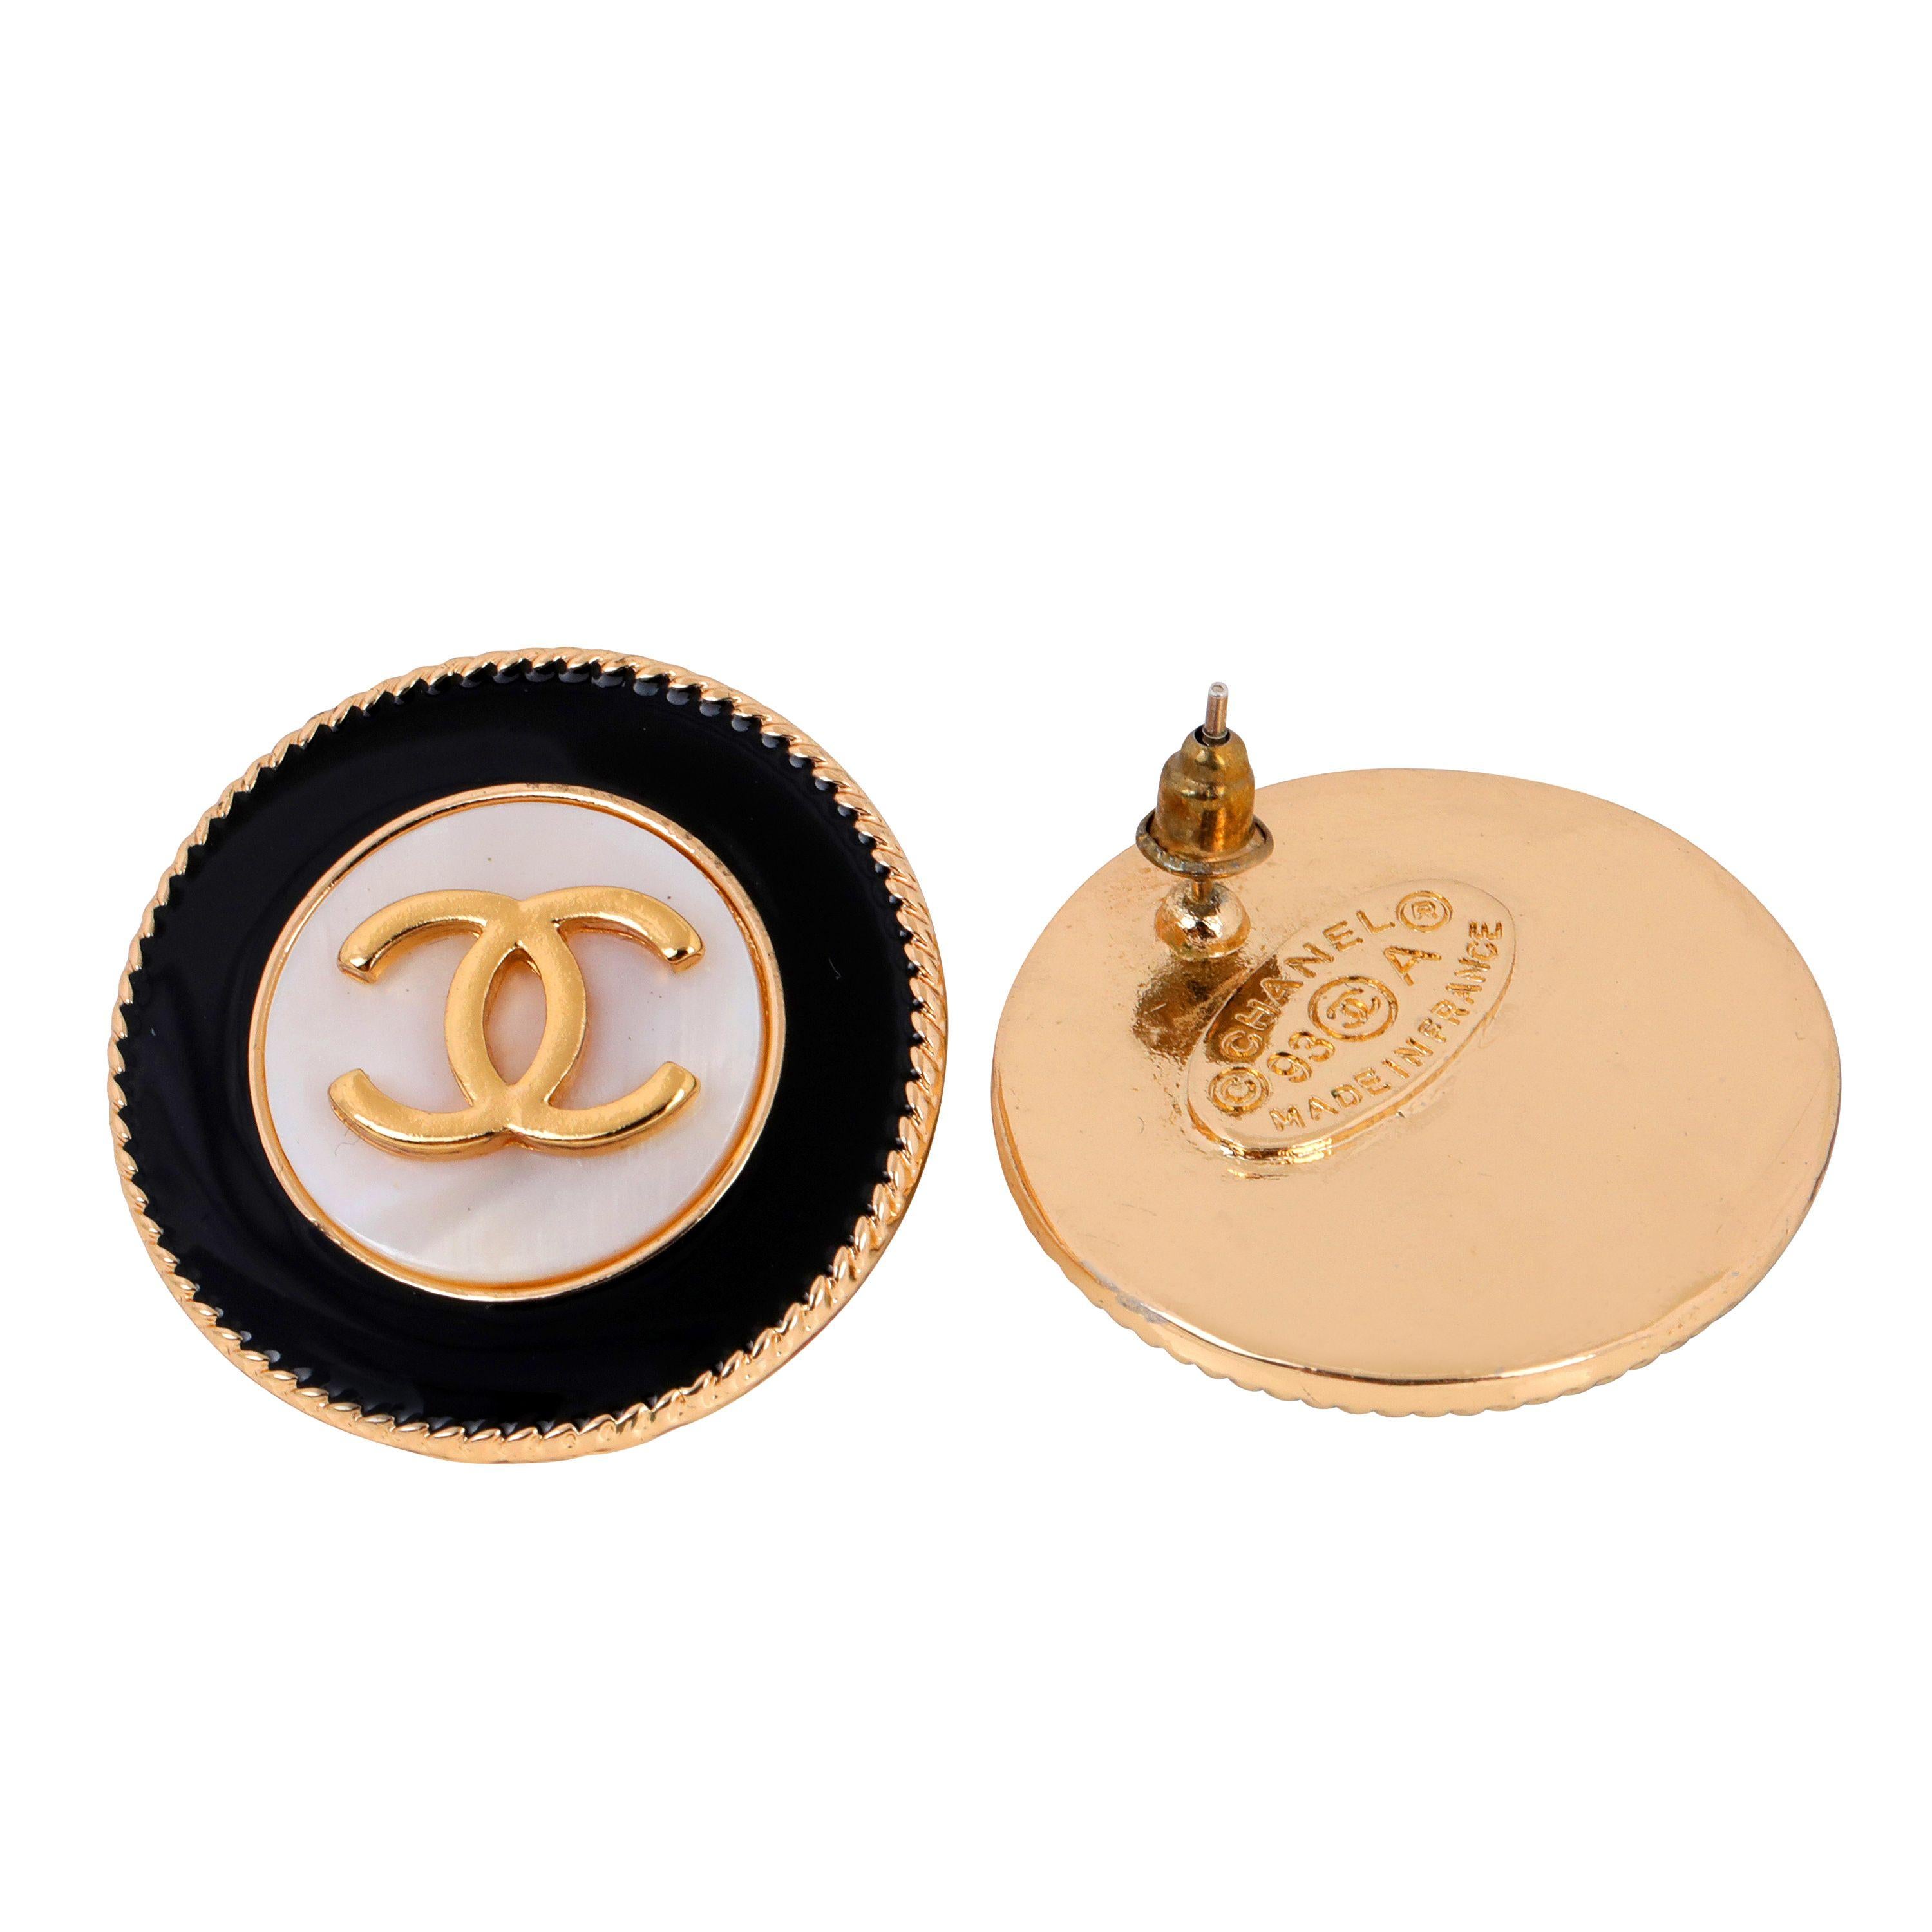 Diese authentischen Chanel Black and White Pearlized Pierced Earrings sind in ausgezeichnetem Vintage-Zustand aus der Fall 1993 Collection.   Runde Knopfohrringe mit goldfarbener Umrandung, zentralen, ineinandergreifenden CCs und einer perlweißen